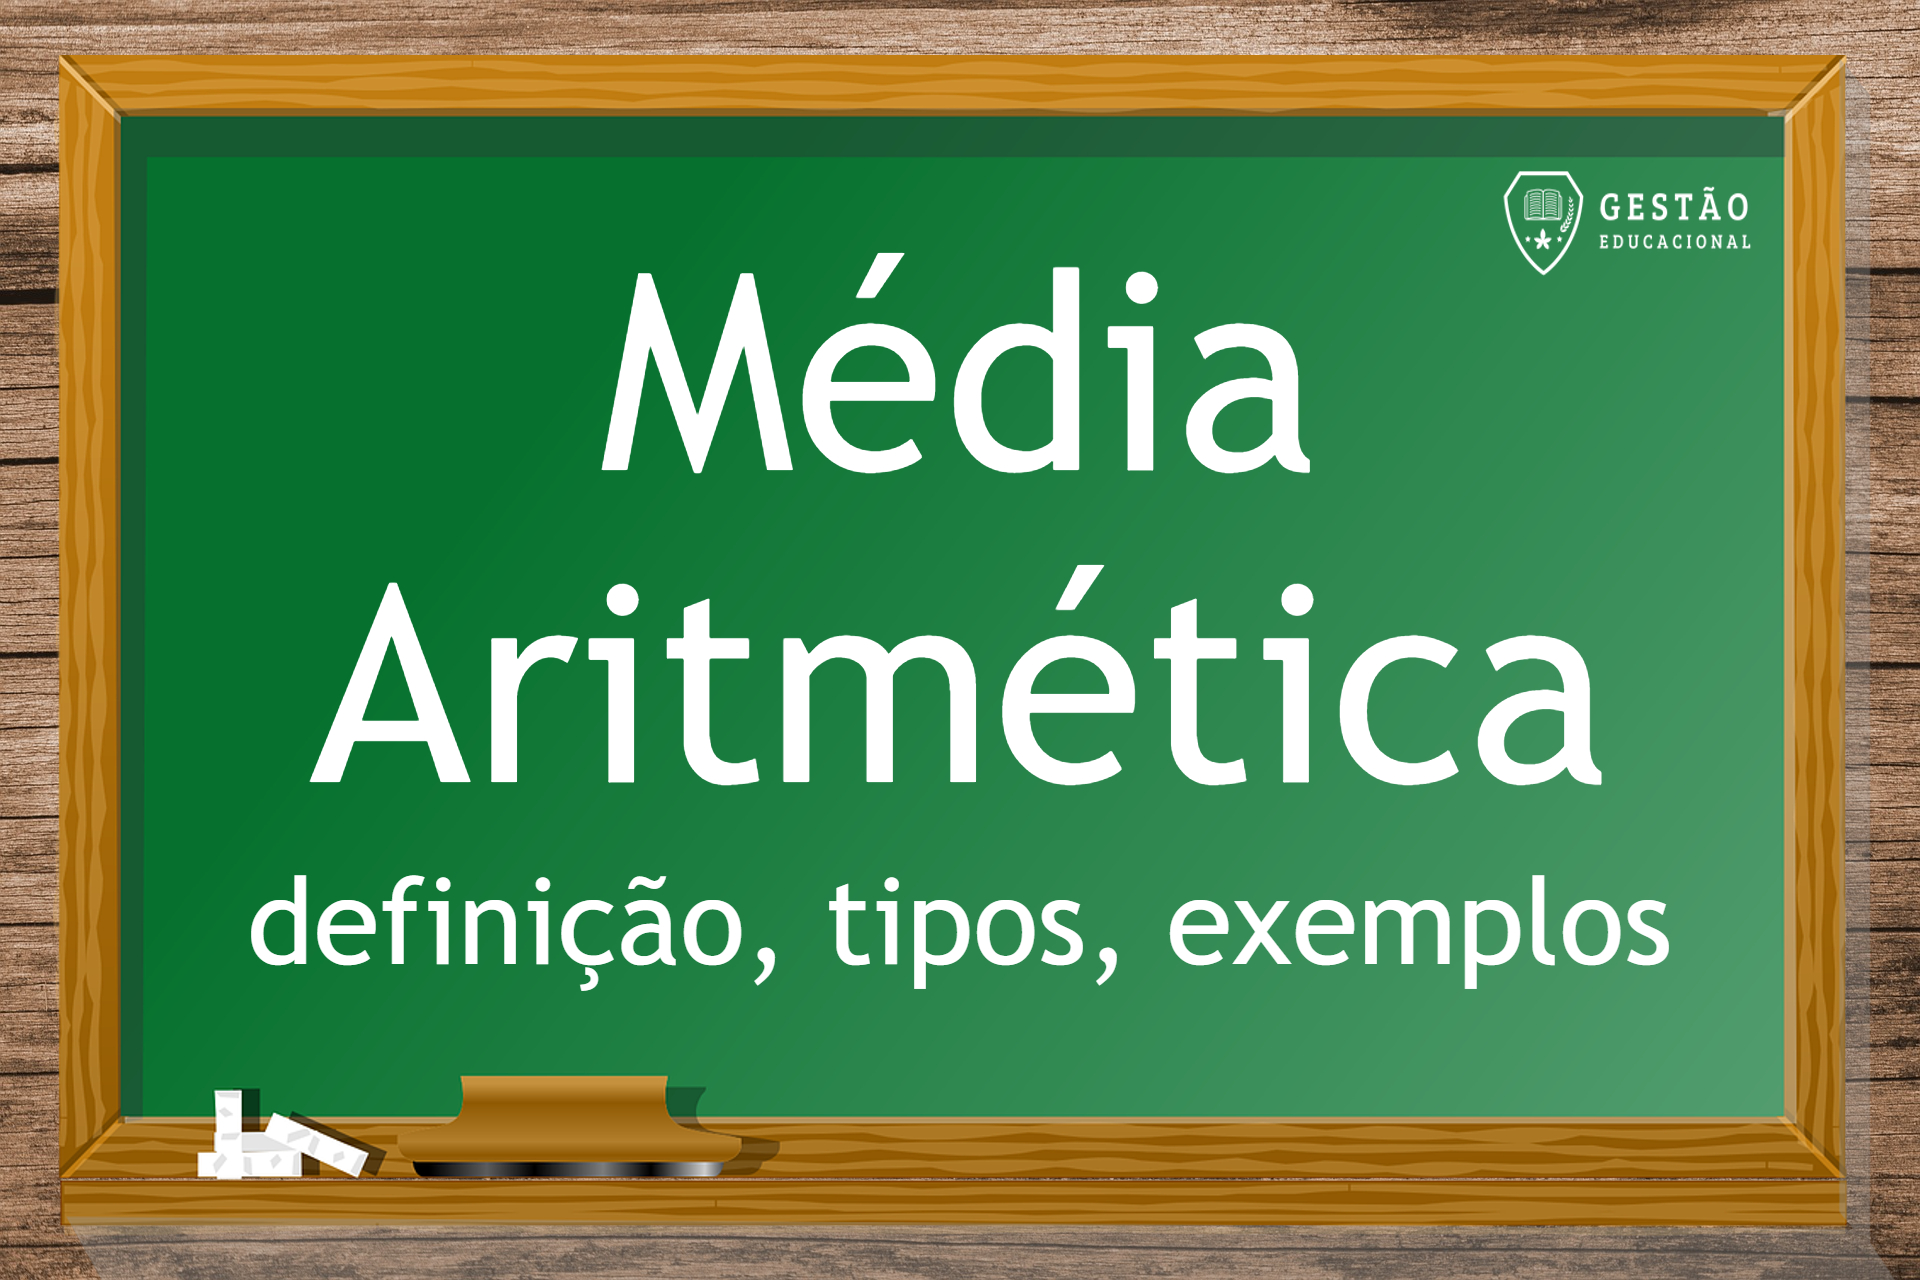 Média Aritmética - Definição, tipos e exemplos (Imagem: Gestão Educacional)